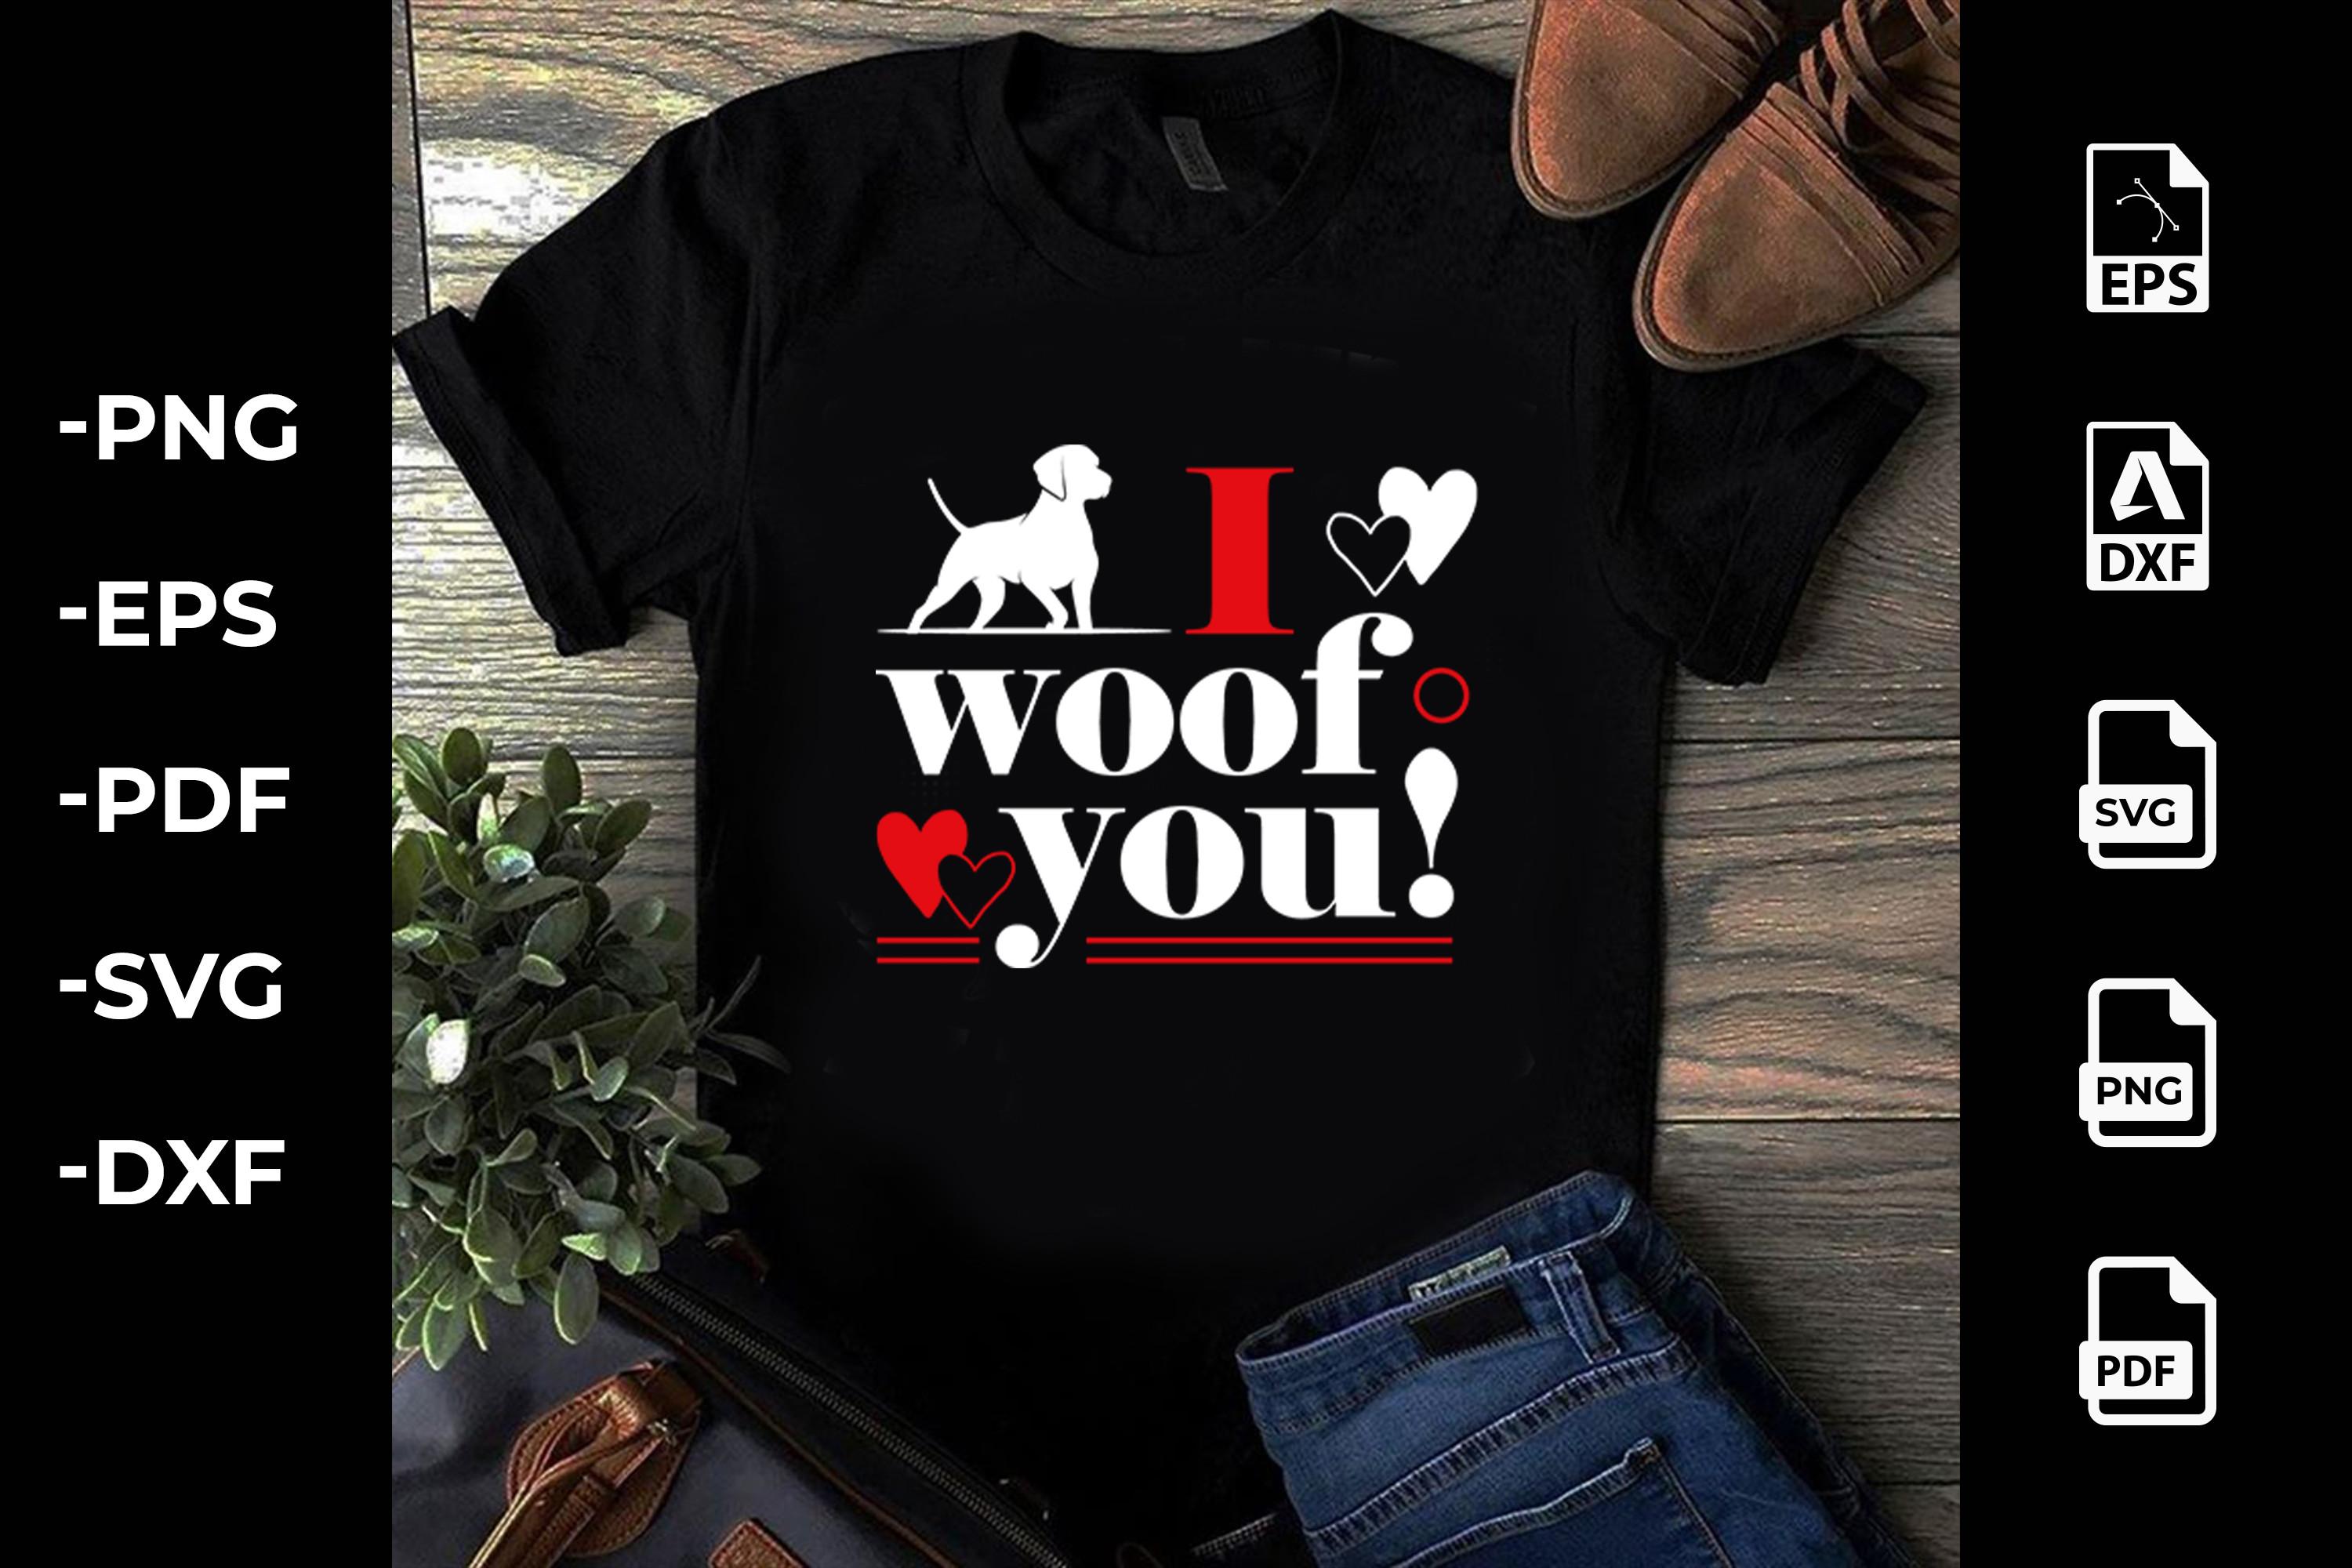 I Woof You!